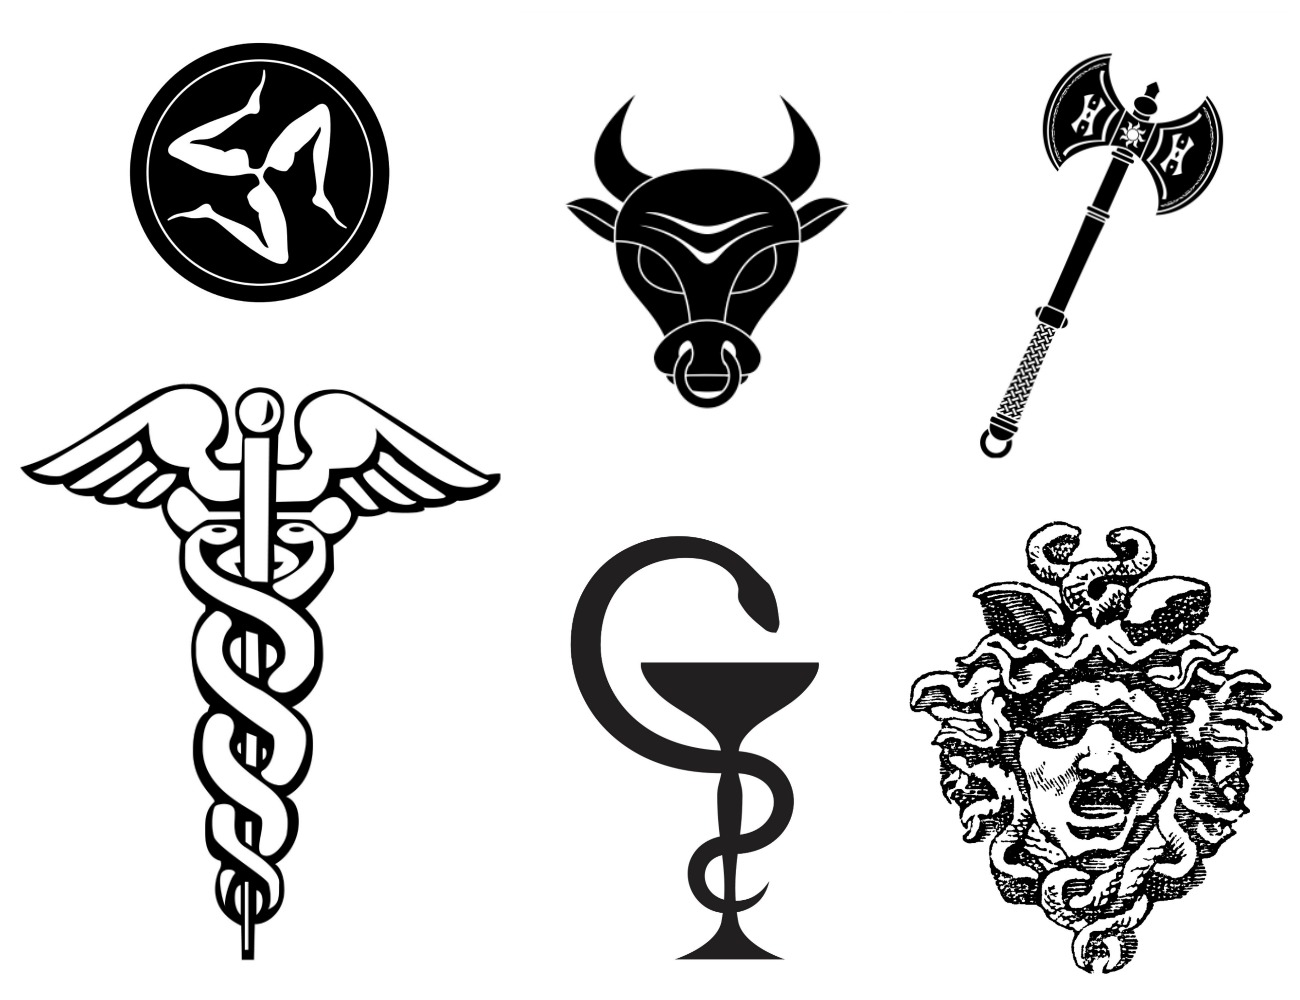 ძველი ბერძნული სიმბოლოები